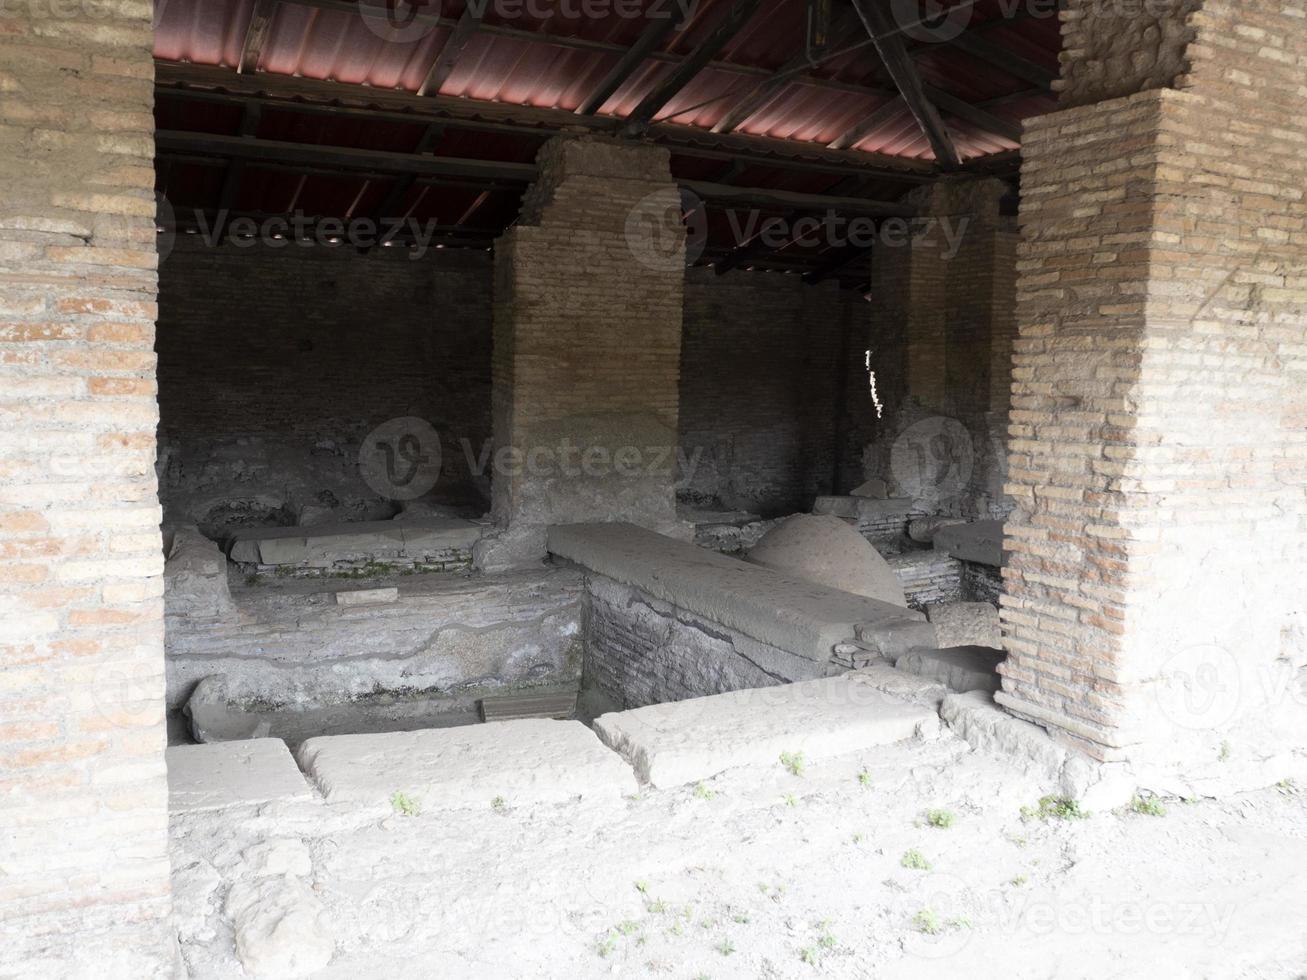 volledigheid wasserij oud oude ostia archeologisch ruïnes foto